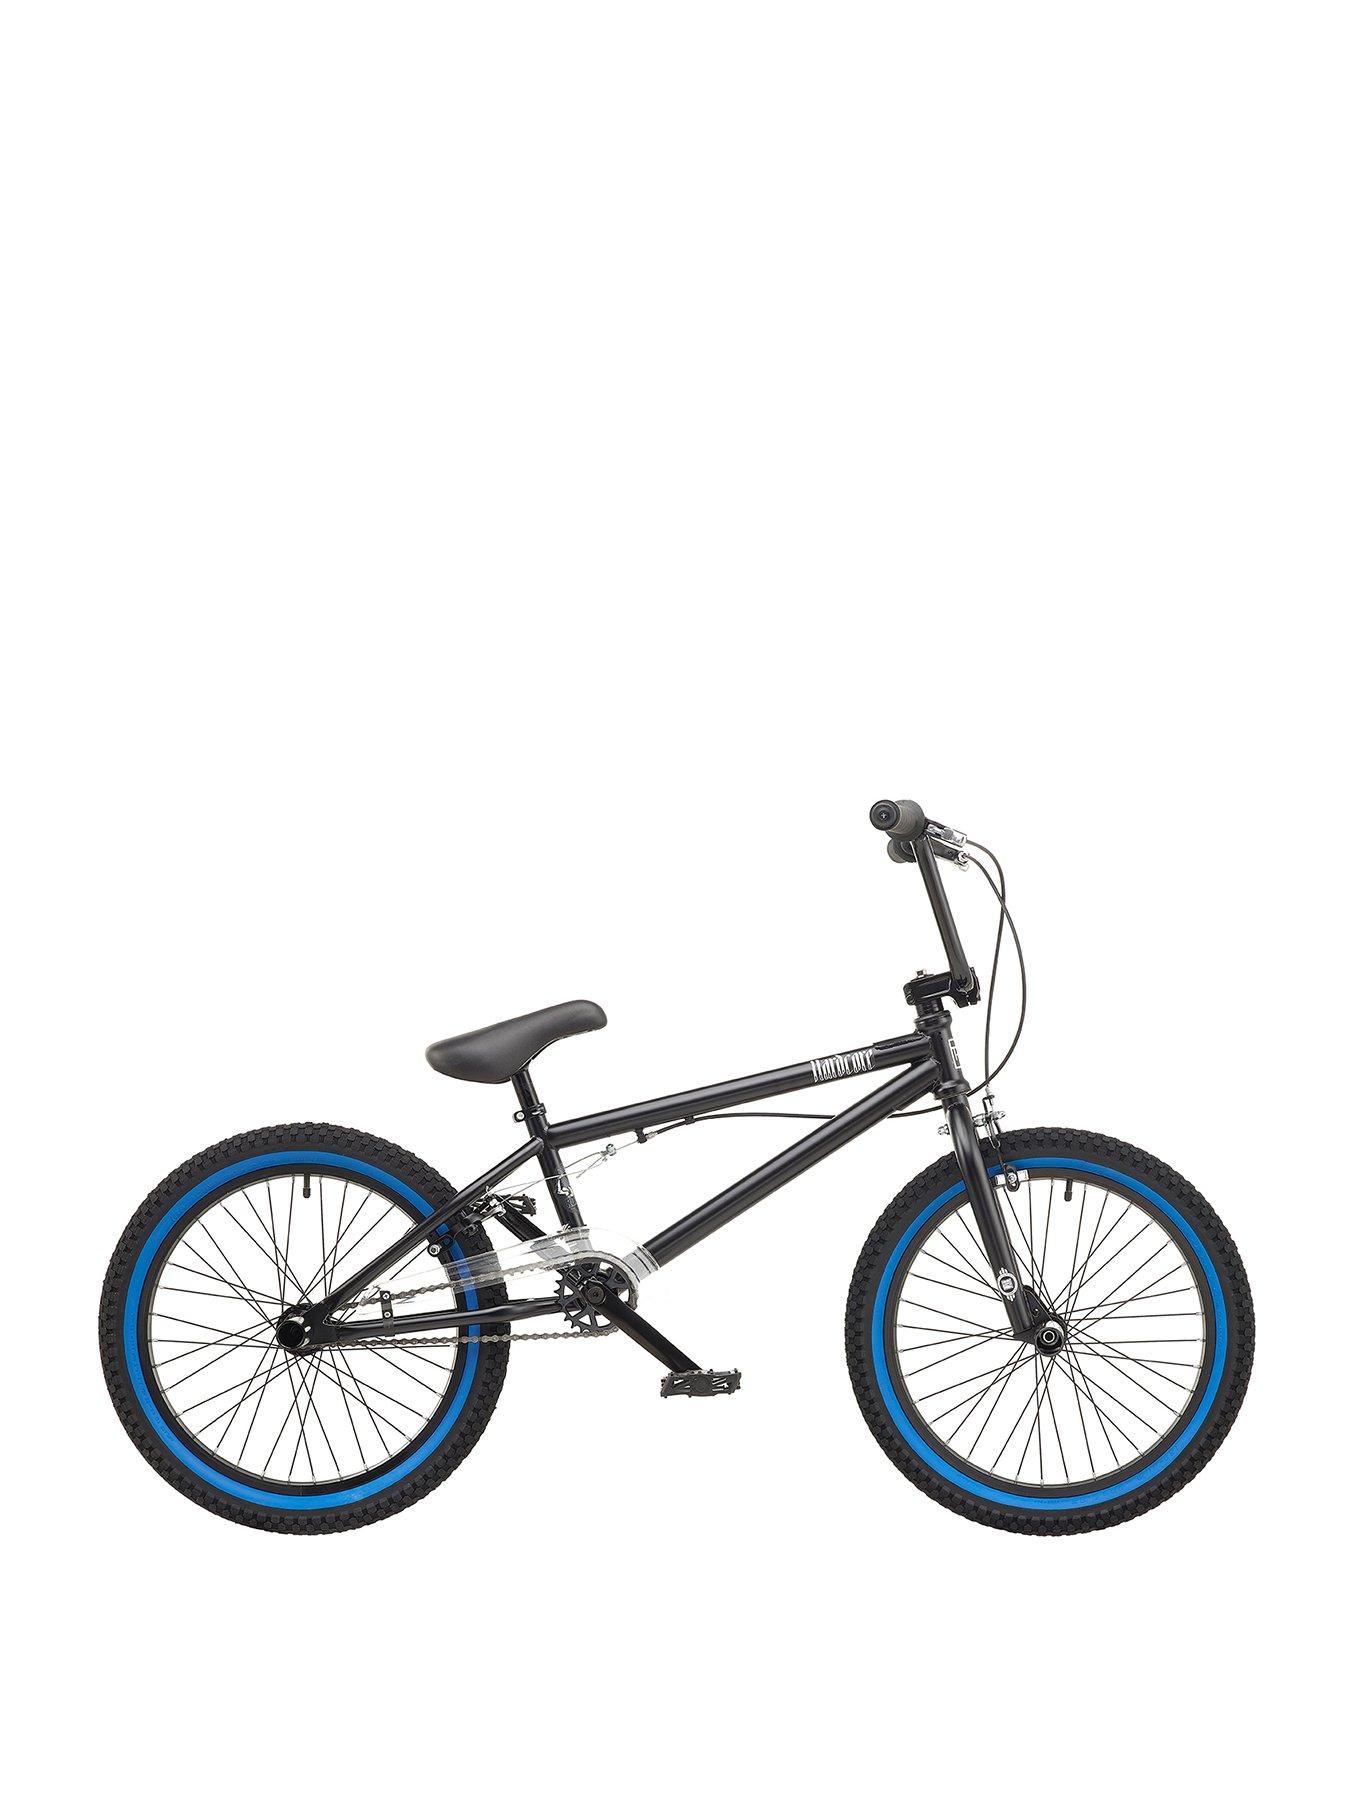 15 inch bmx bike